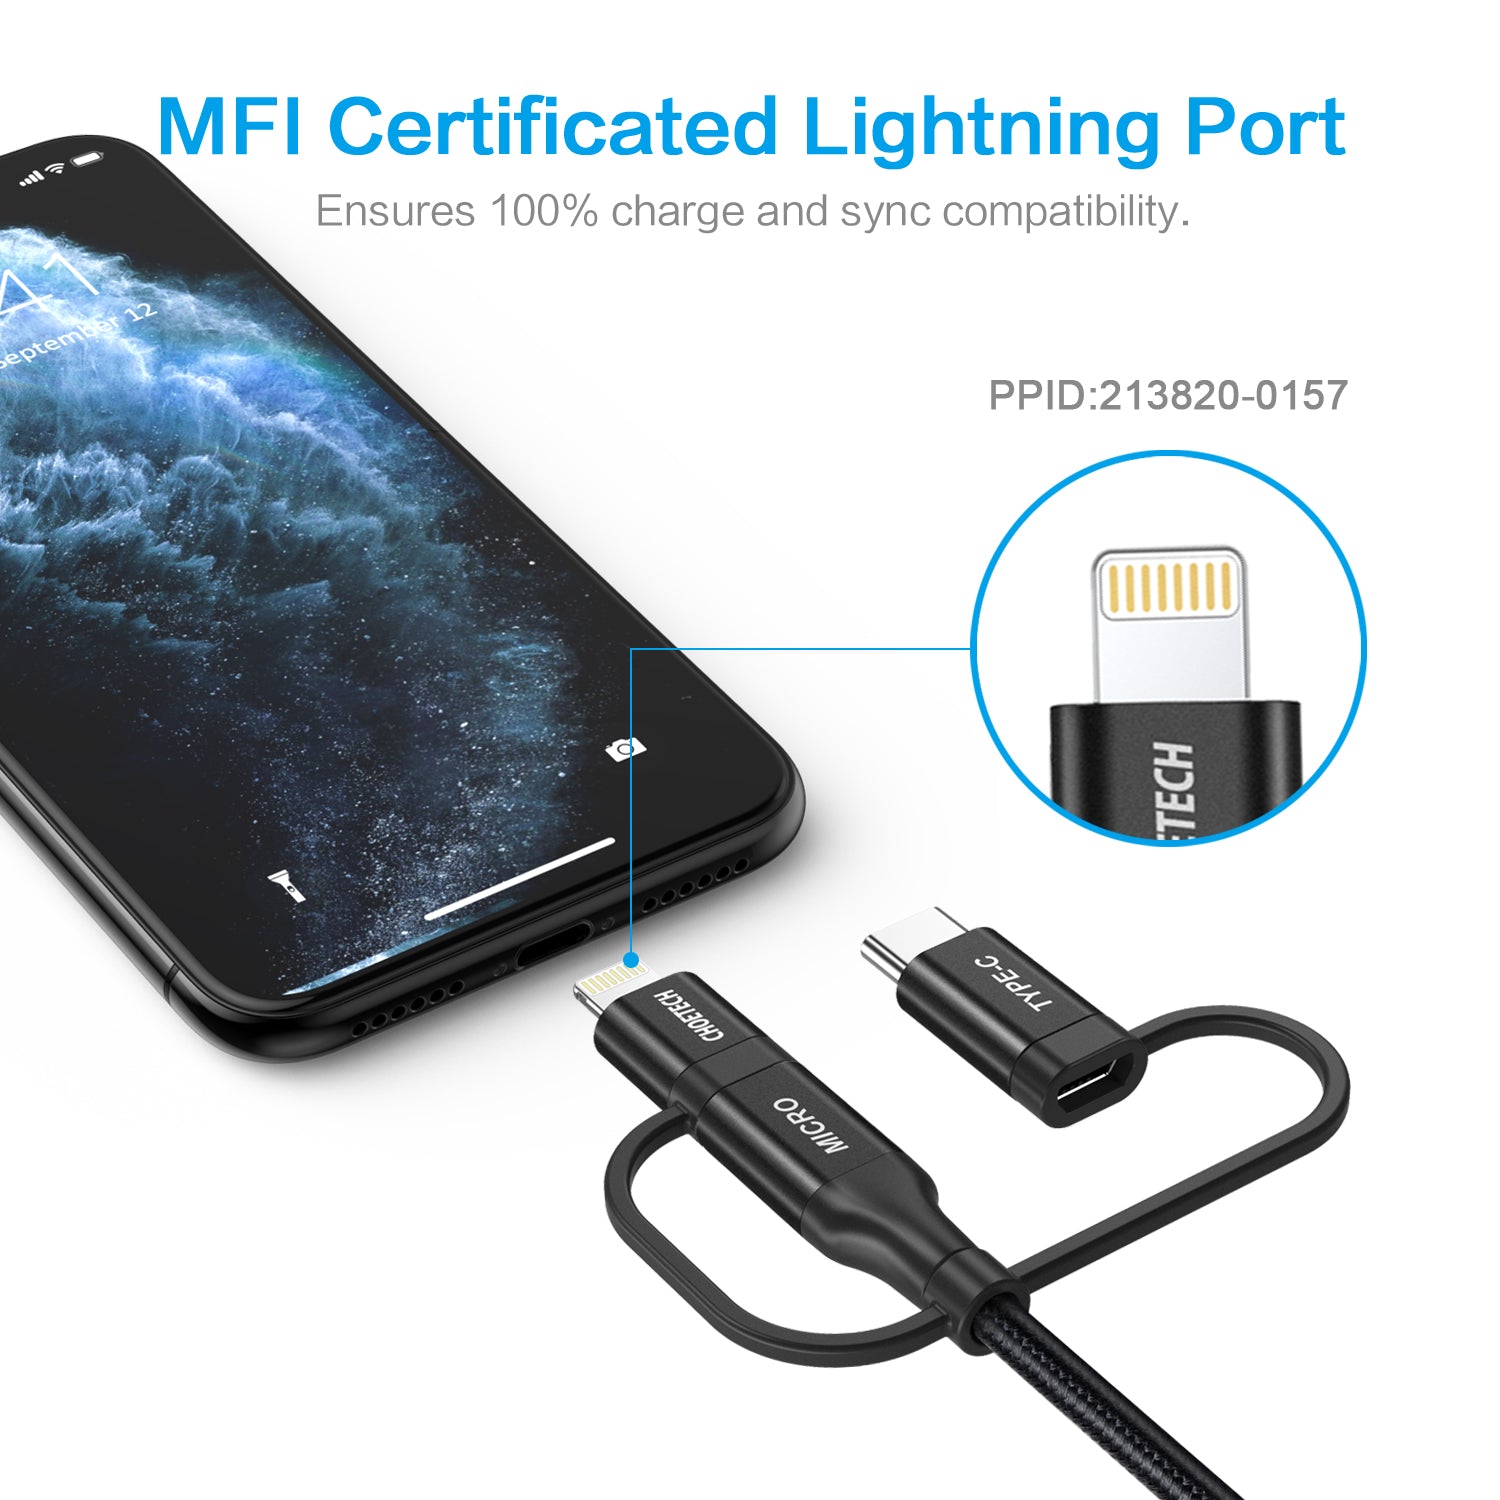 IP0030 Multi-USB-Kabel, CHOETECH 3-in-1-Geflechtkabel mit Lightning-/Typ-C-/Micro-USB-Anschluss, [MFi-zertifiziert] Lade- und Synchronisierungskabel für iPhone, iPad, Galaxy und weitere iOS- und Android-Geräte